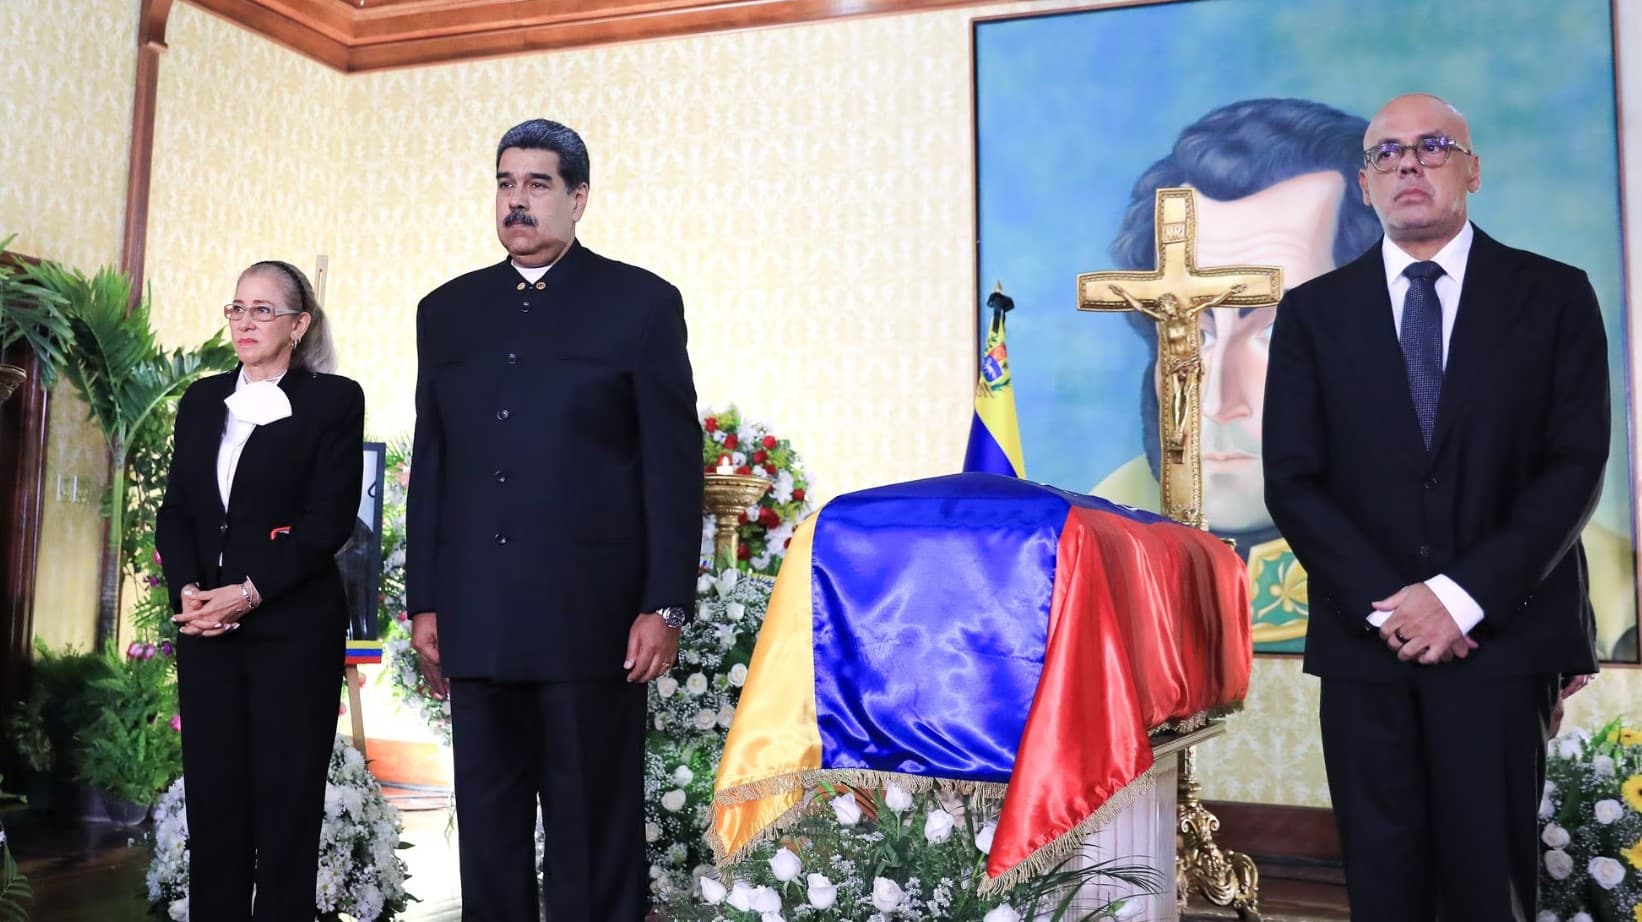 Esta es la última condición que puso el madurismo para humillar a la oposición en Venezuela